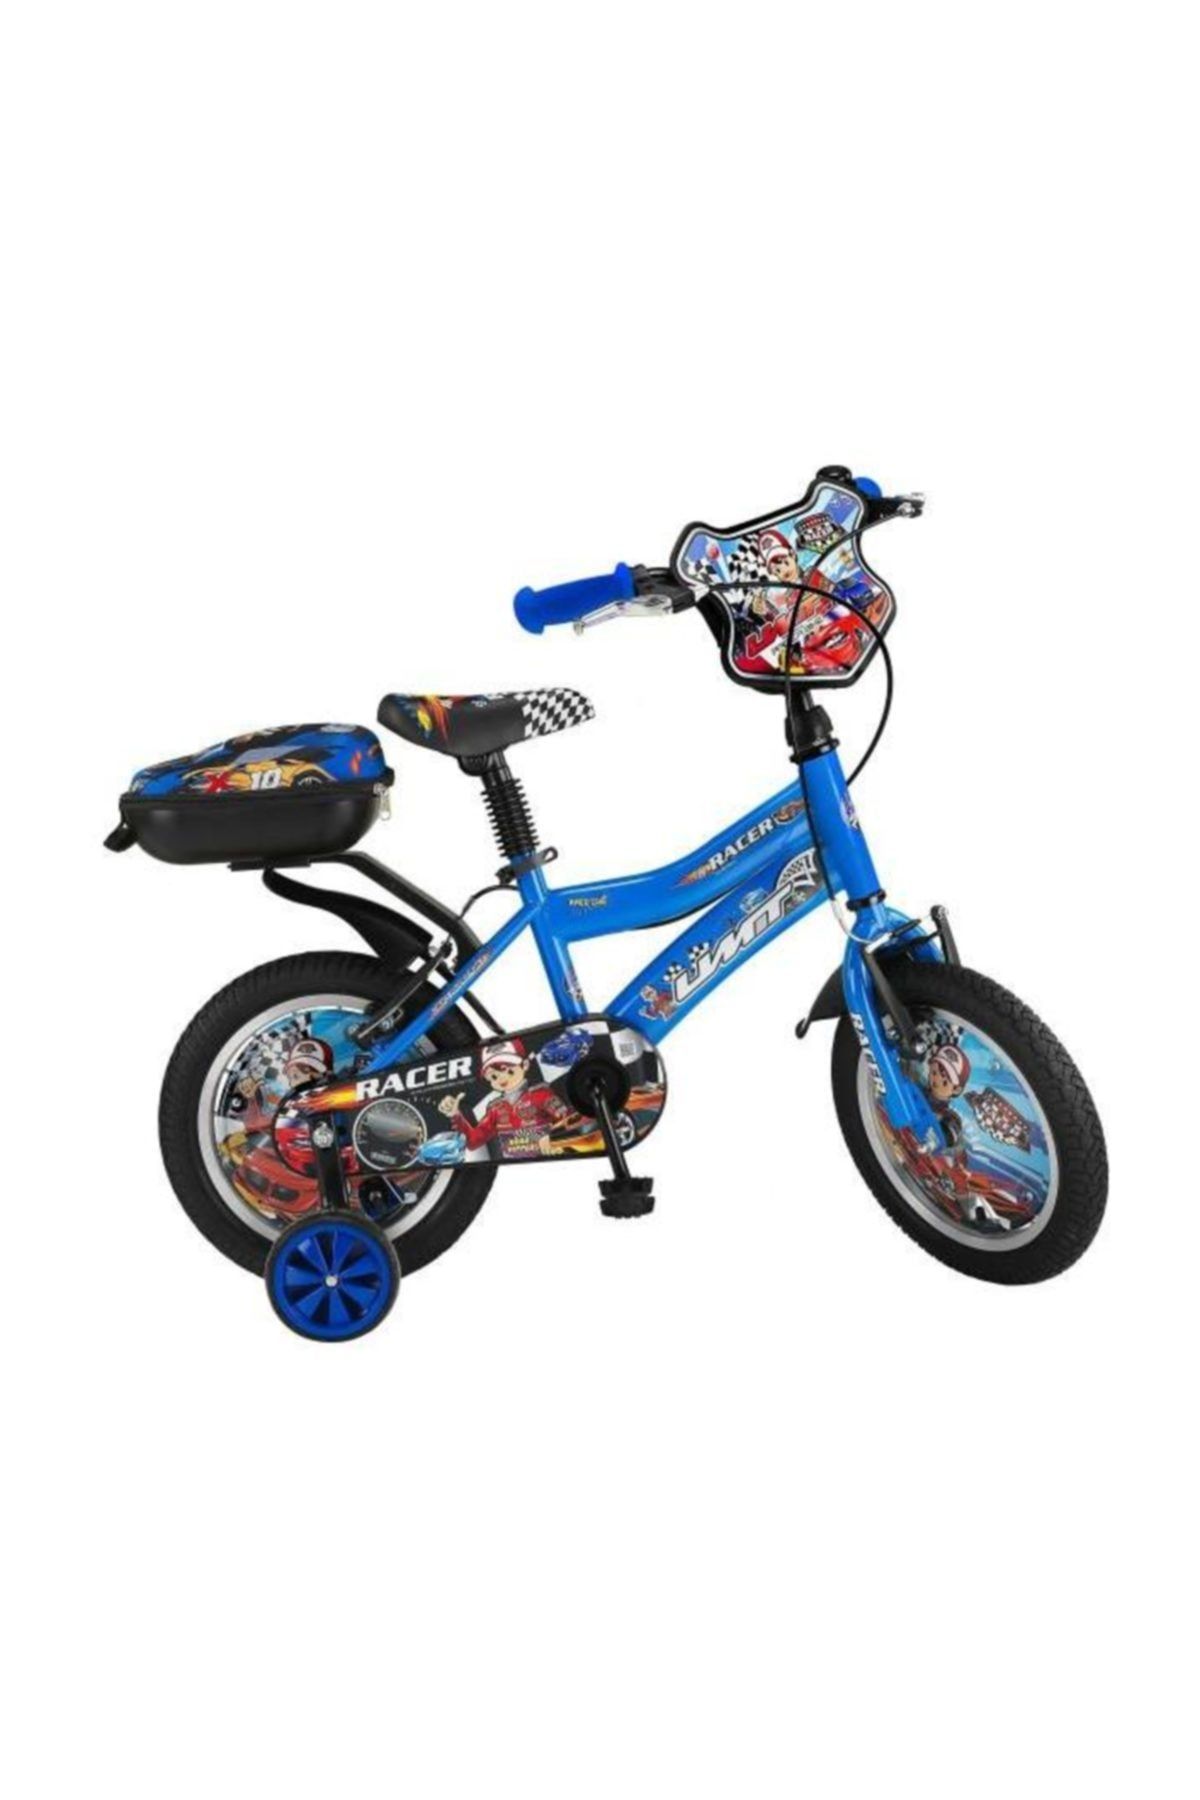 Ümit Racer 14 Jant Çocuk Bisikleti (80-100 cm Boy)